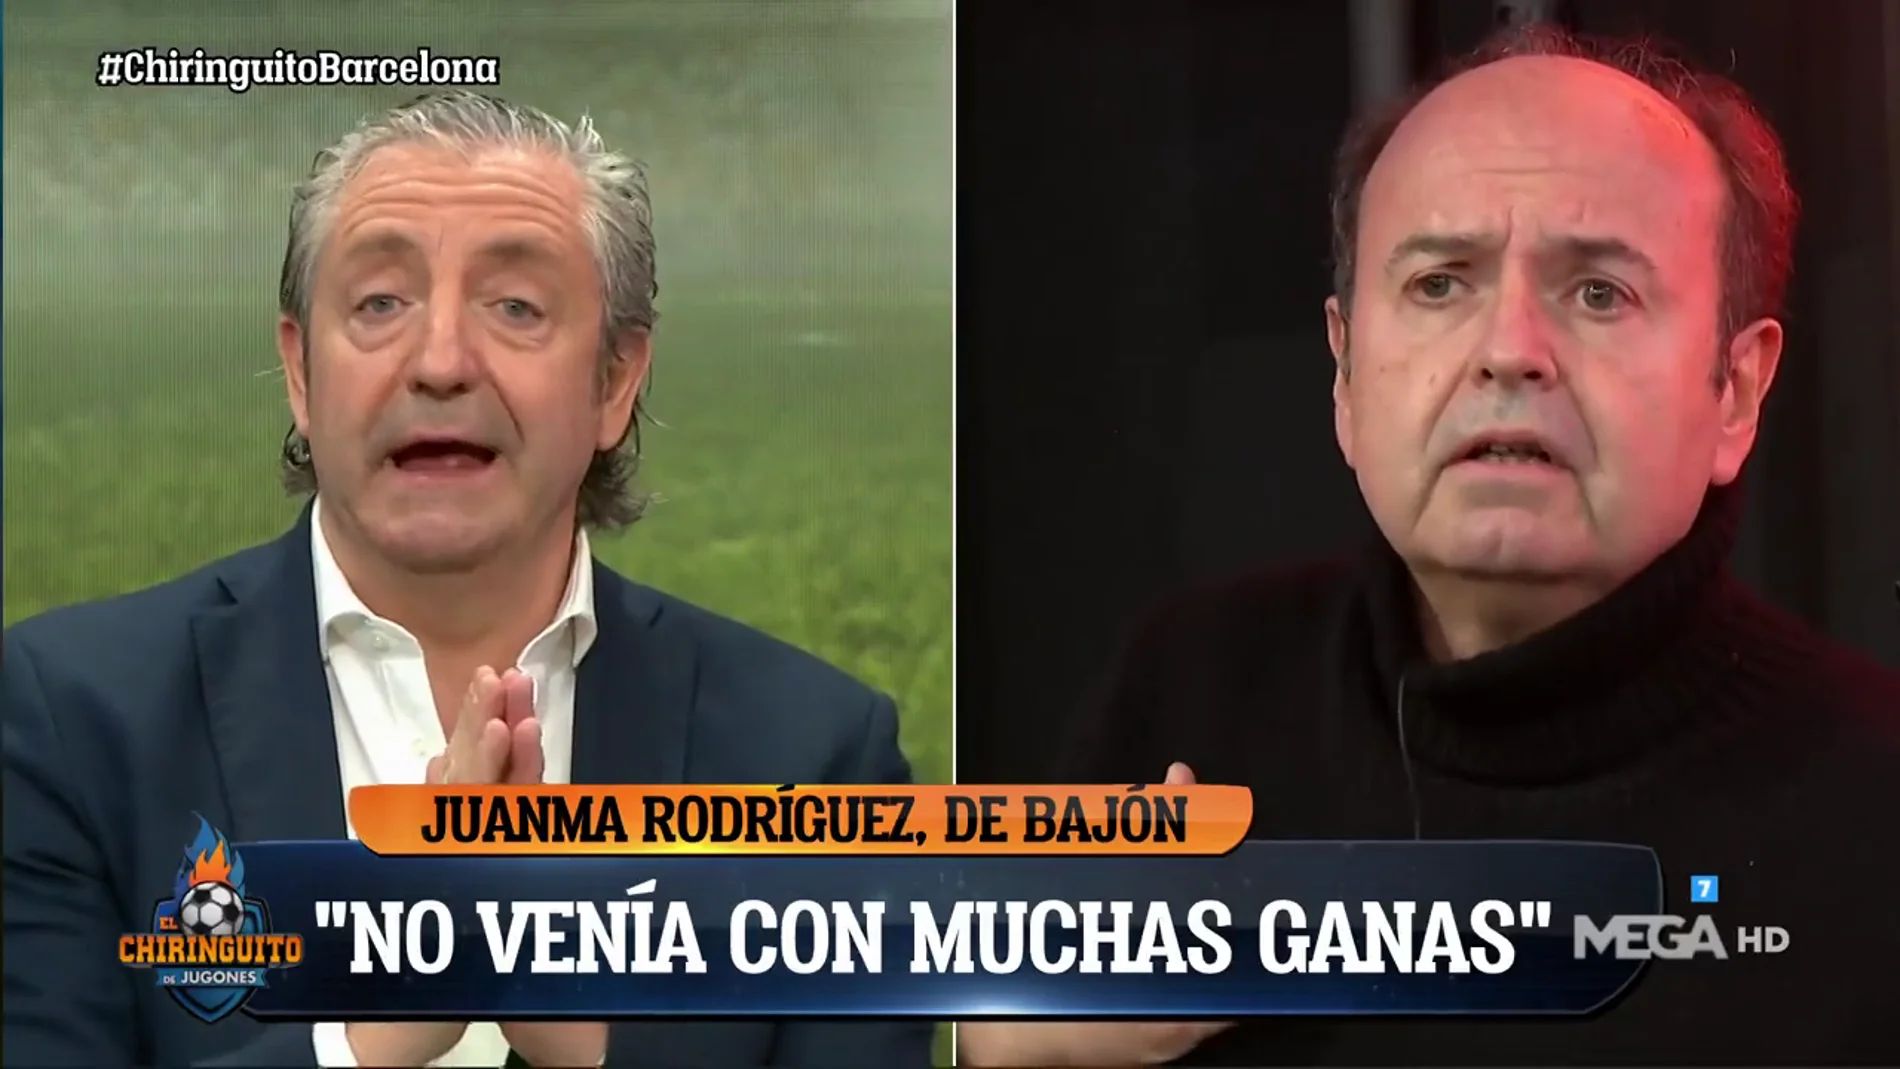 Juanma Rodríguez: "No quiero que me traten mejor... ¡quiero que no me traten peor!" 